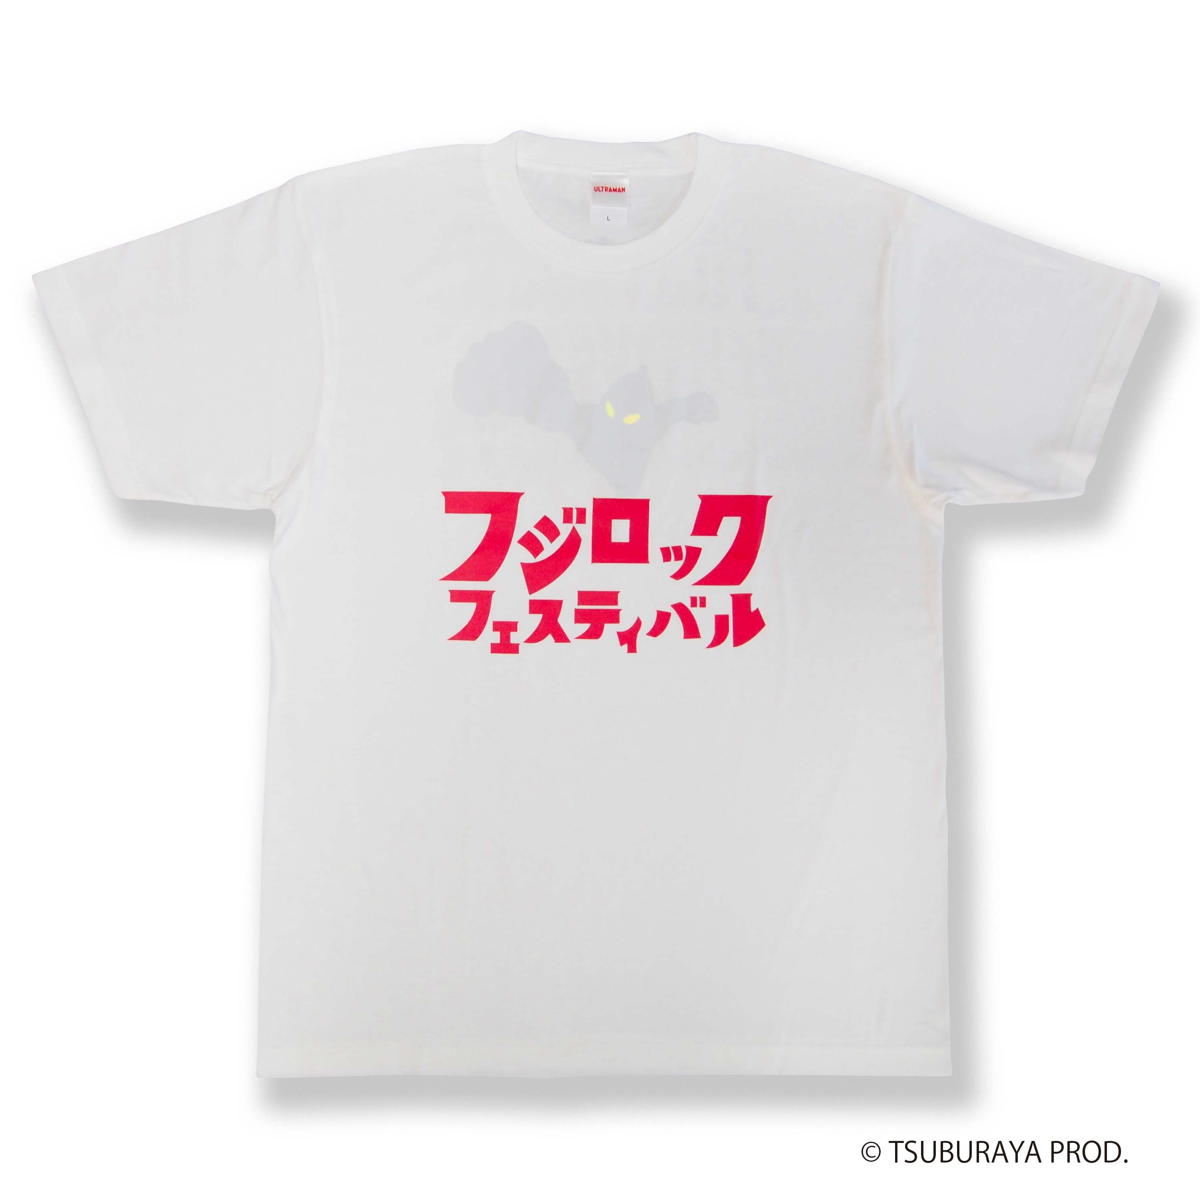 フジロック'22 × GAN-BAN ウルトラマン Tシャツ